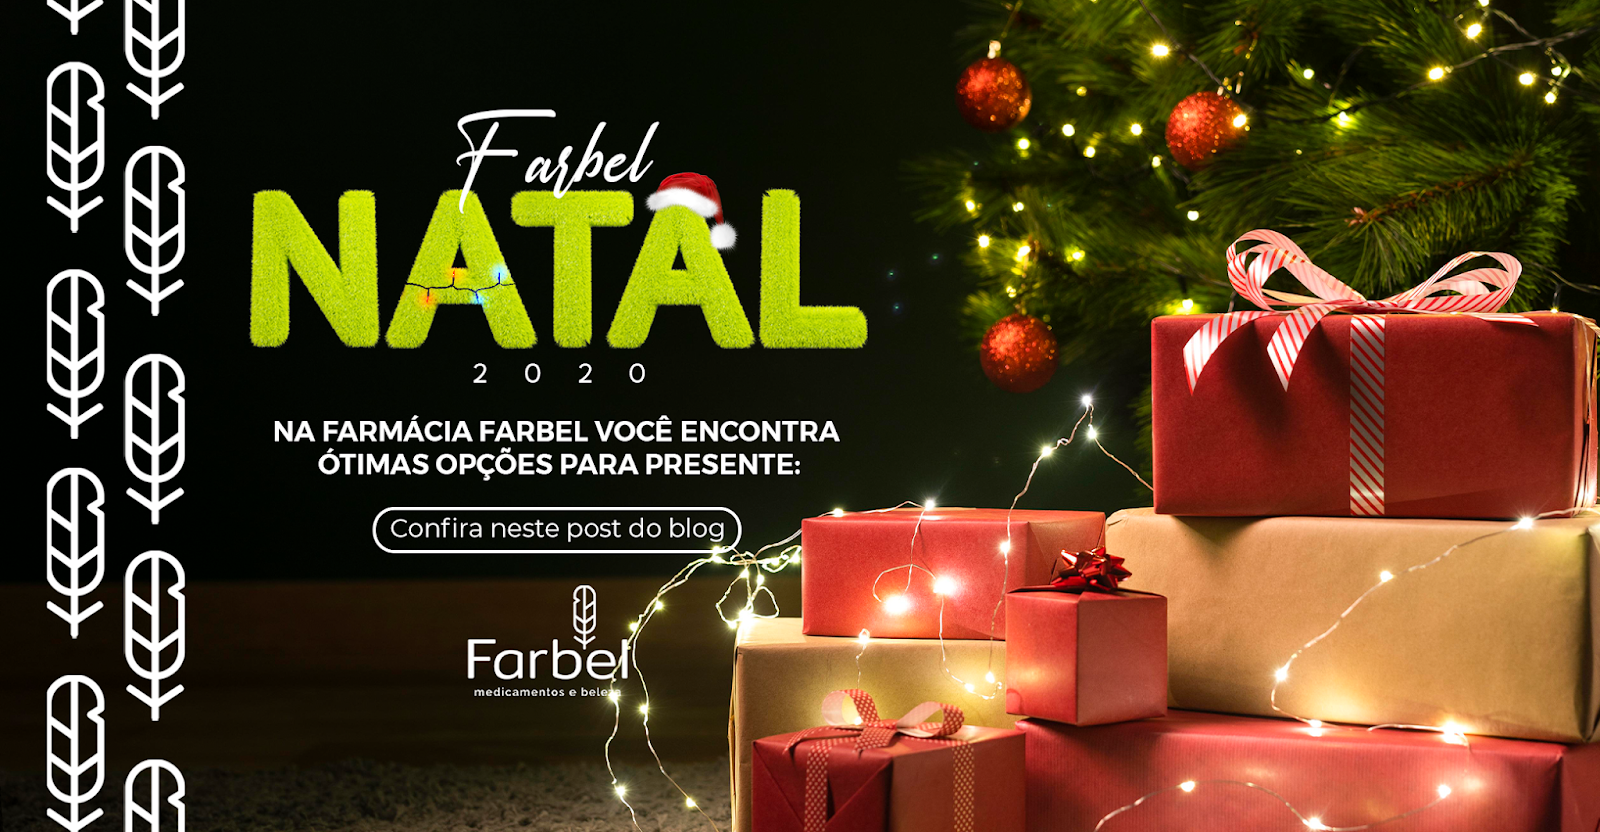 Exemplo da farmácia Farbel sobre como decorar a farmácia para o Natal nas redes sociais.